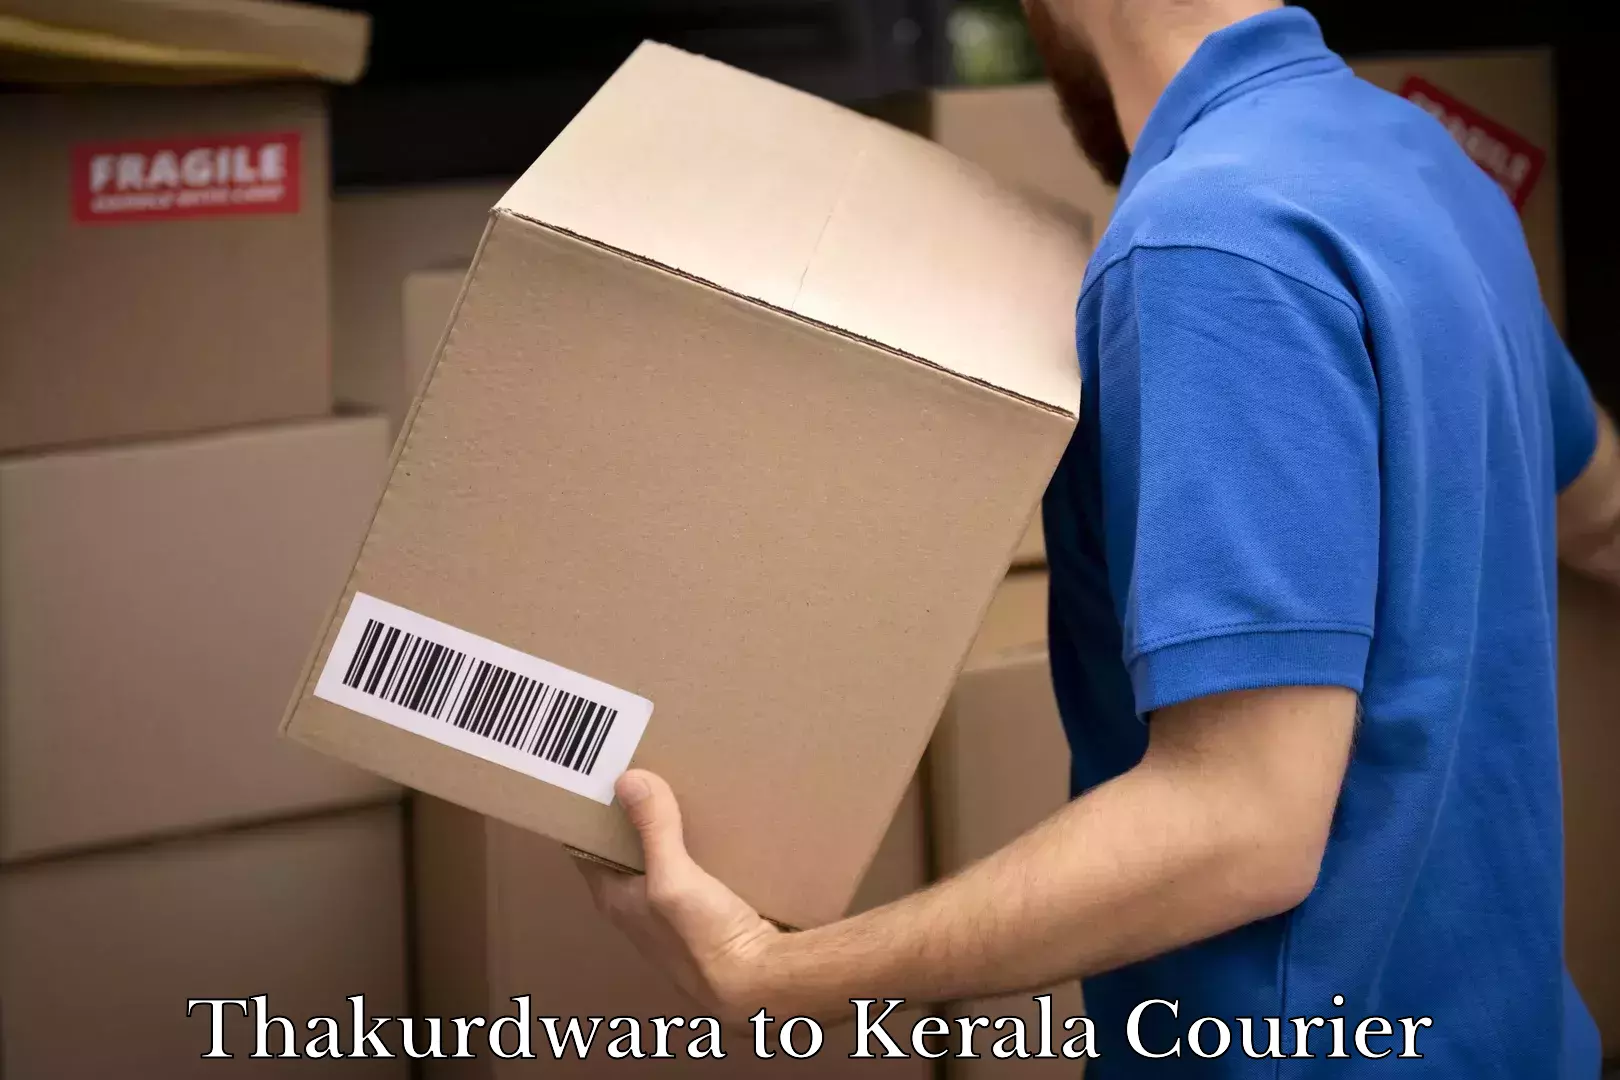 State-of-the-art courier technology Thakurdwara to Kerala